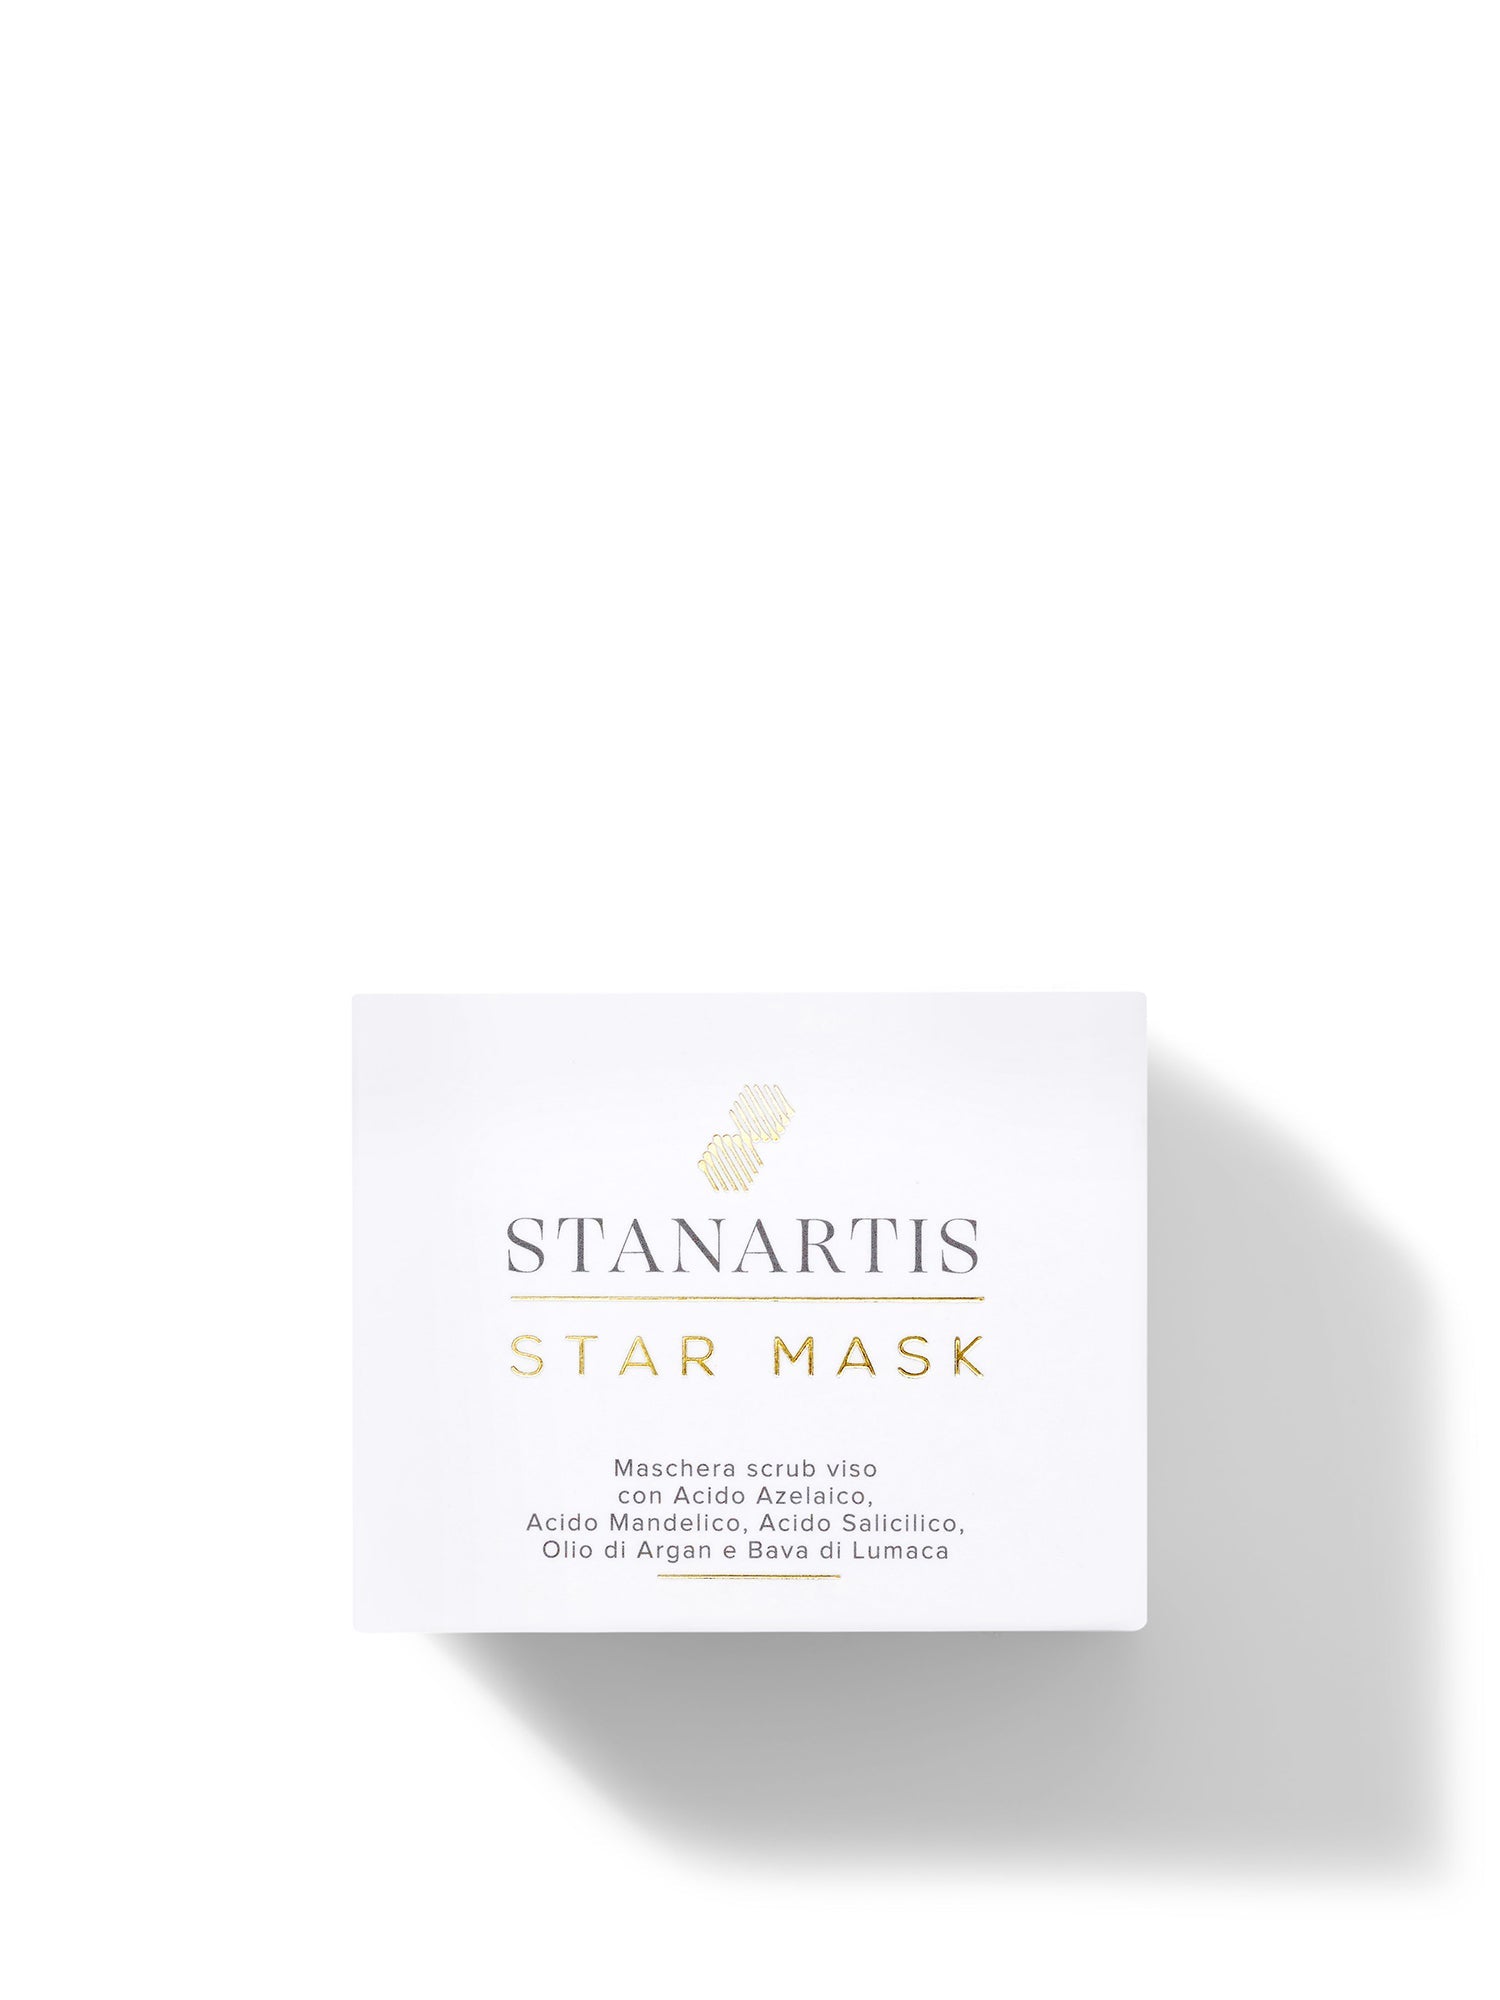 Scatola Star Mask, la maschera purificante e scrub viso